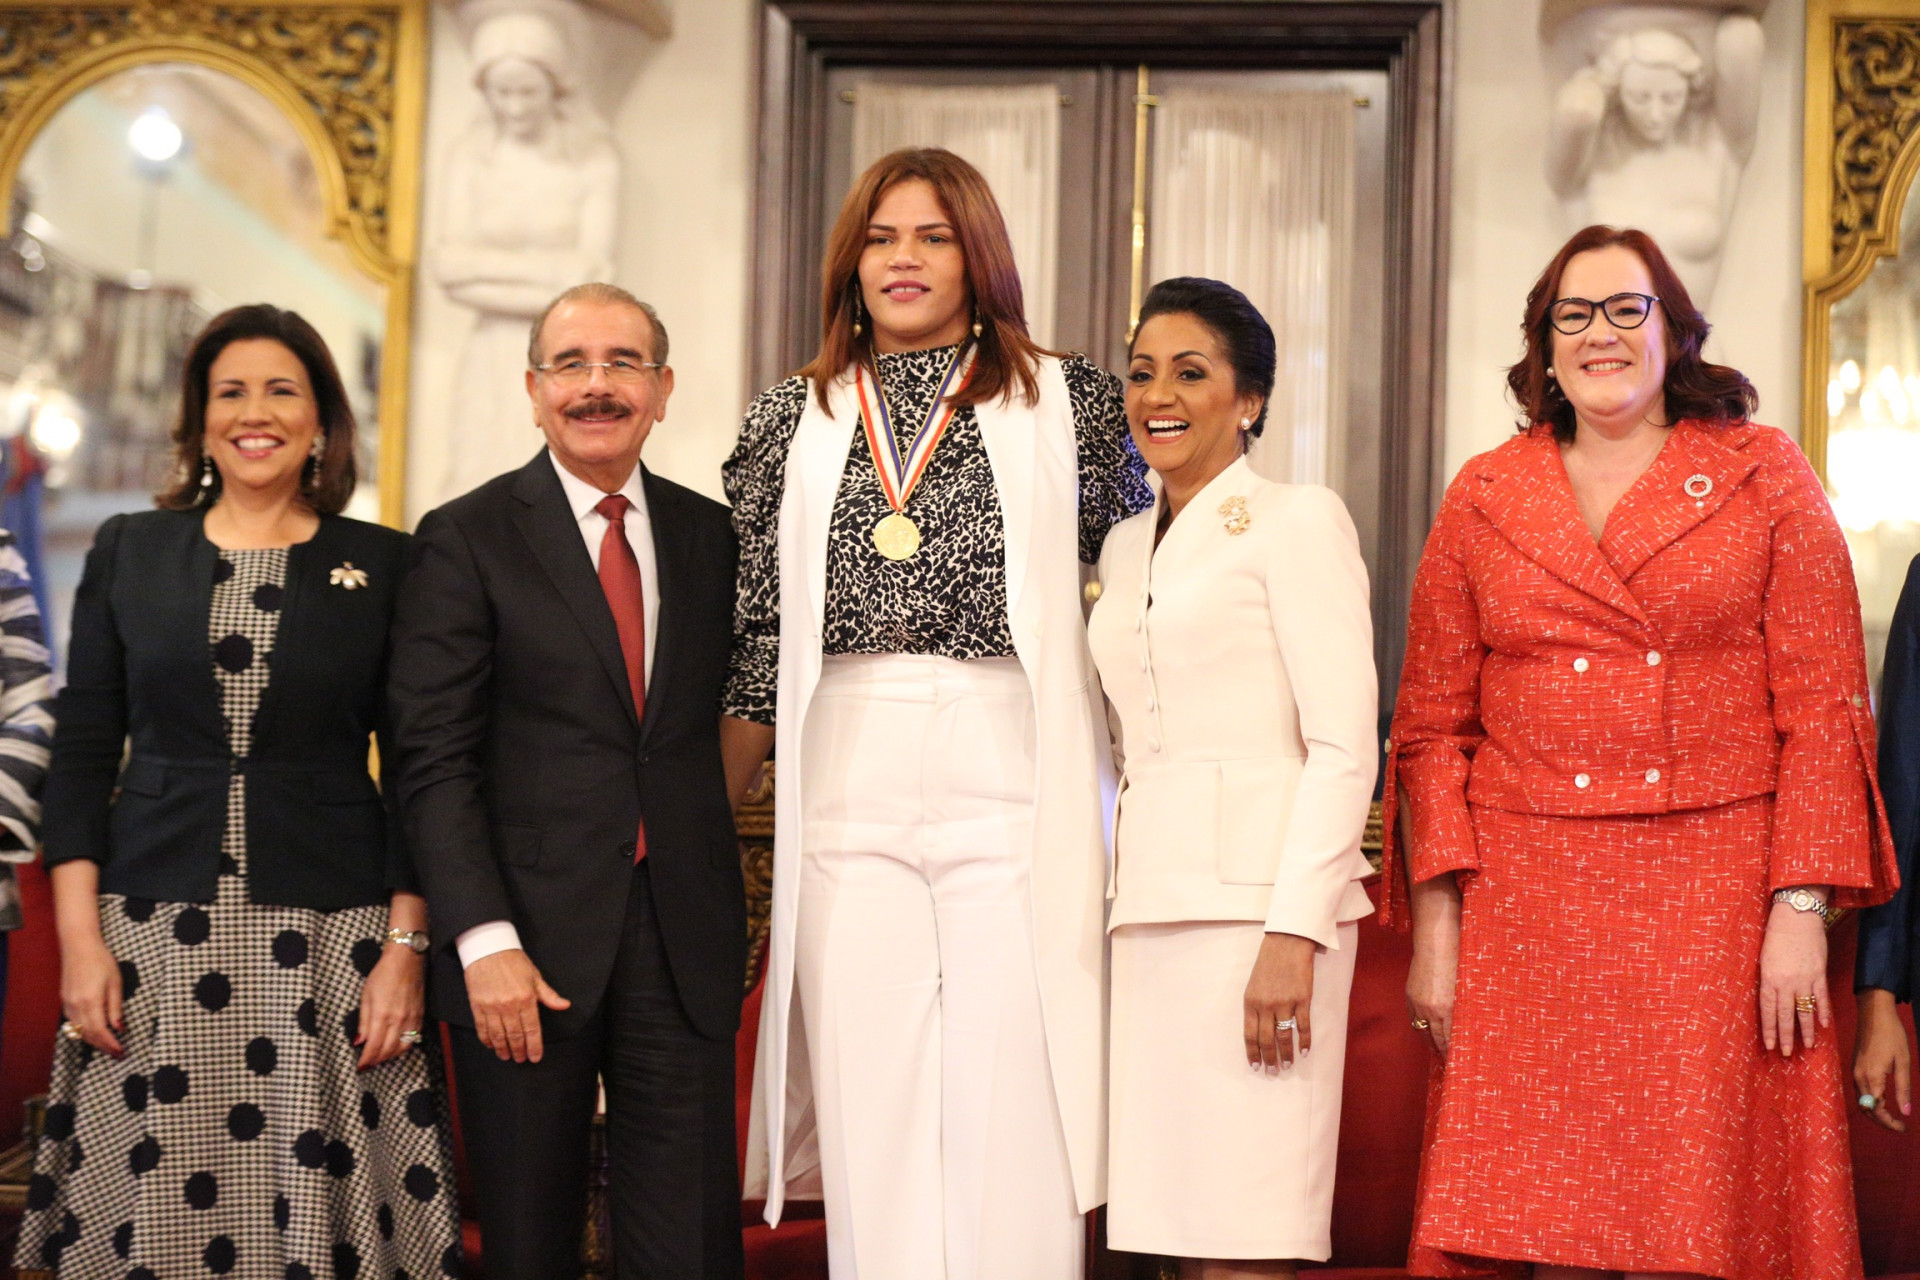 REPÚBLICA DOMINICANA: Presidente Danilo Medina otorga Medalla al Mérito a 13 mujeres dominicanas, por sus aportes al país